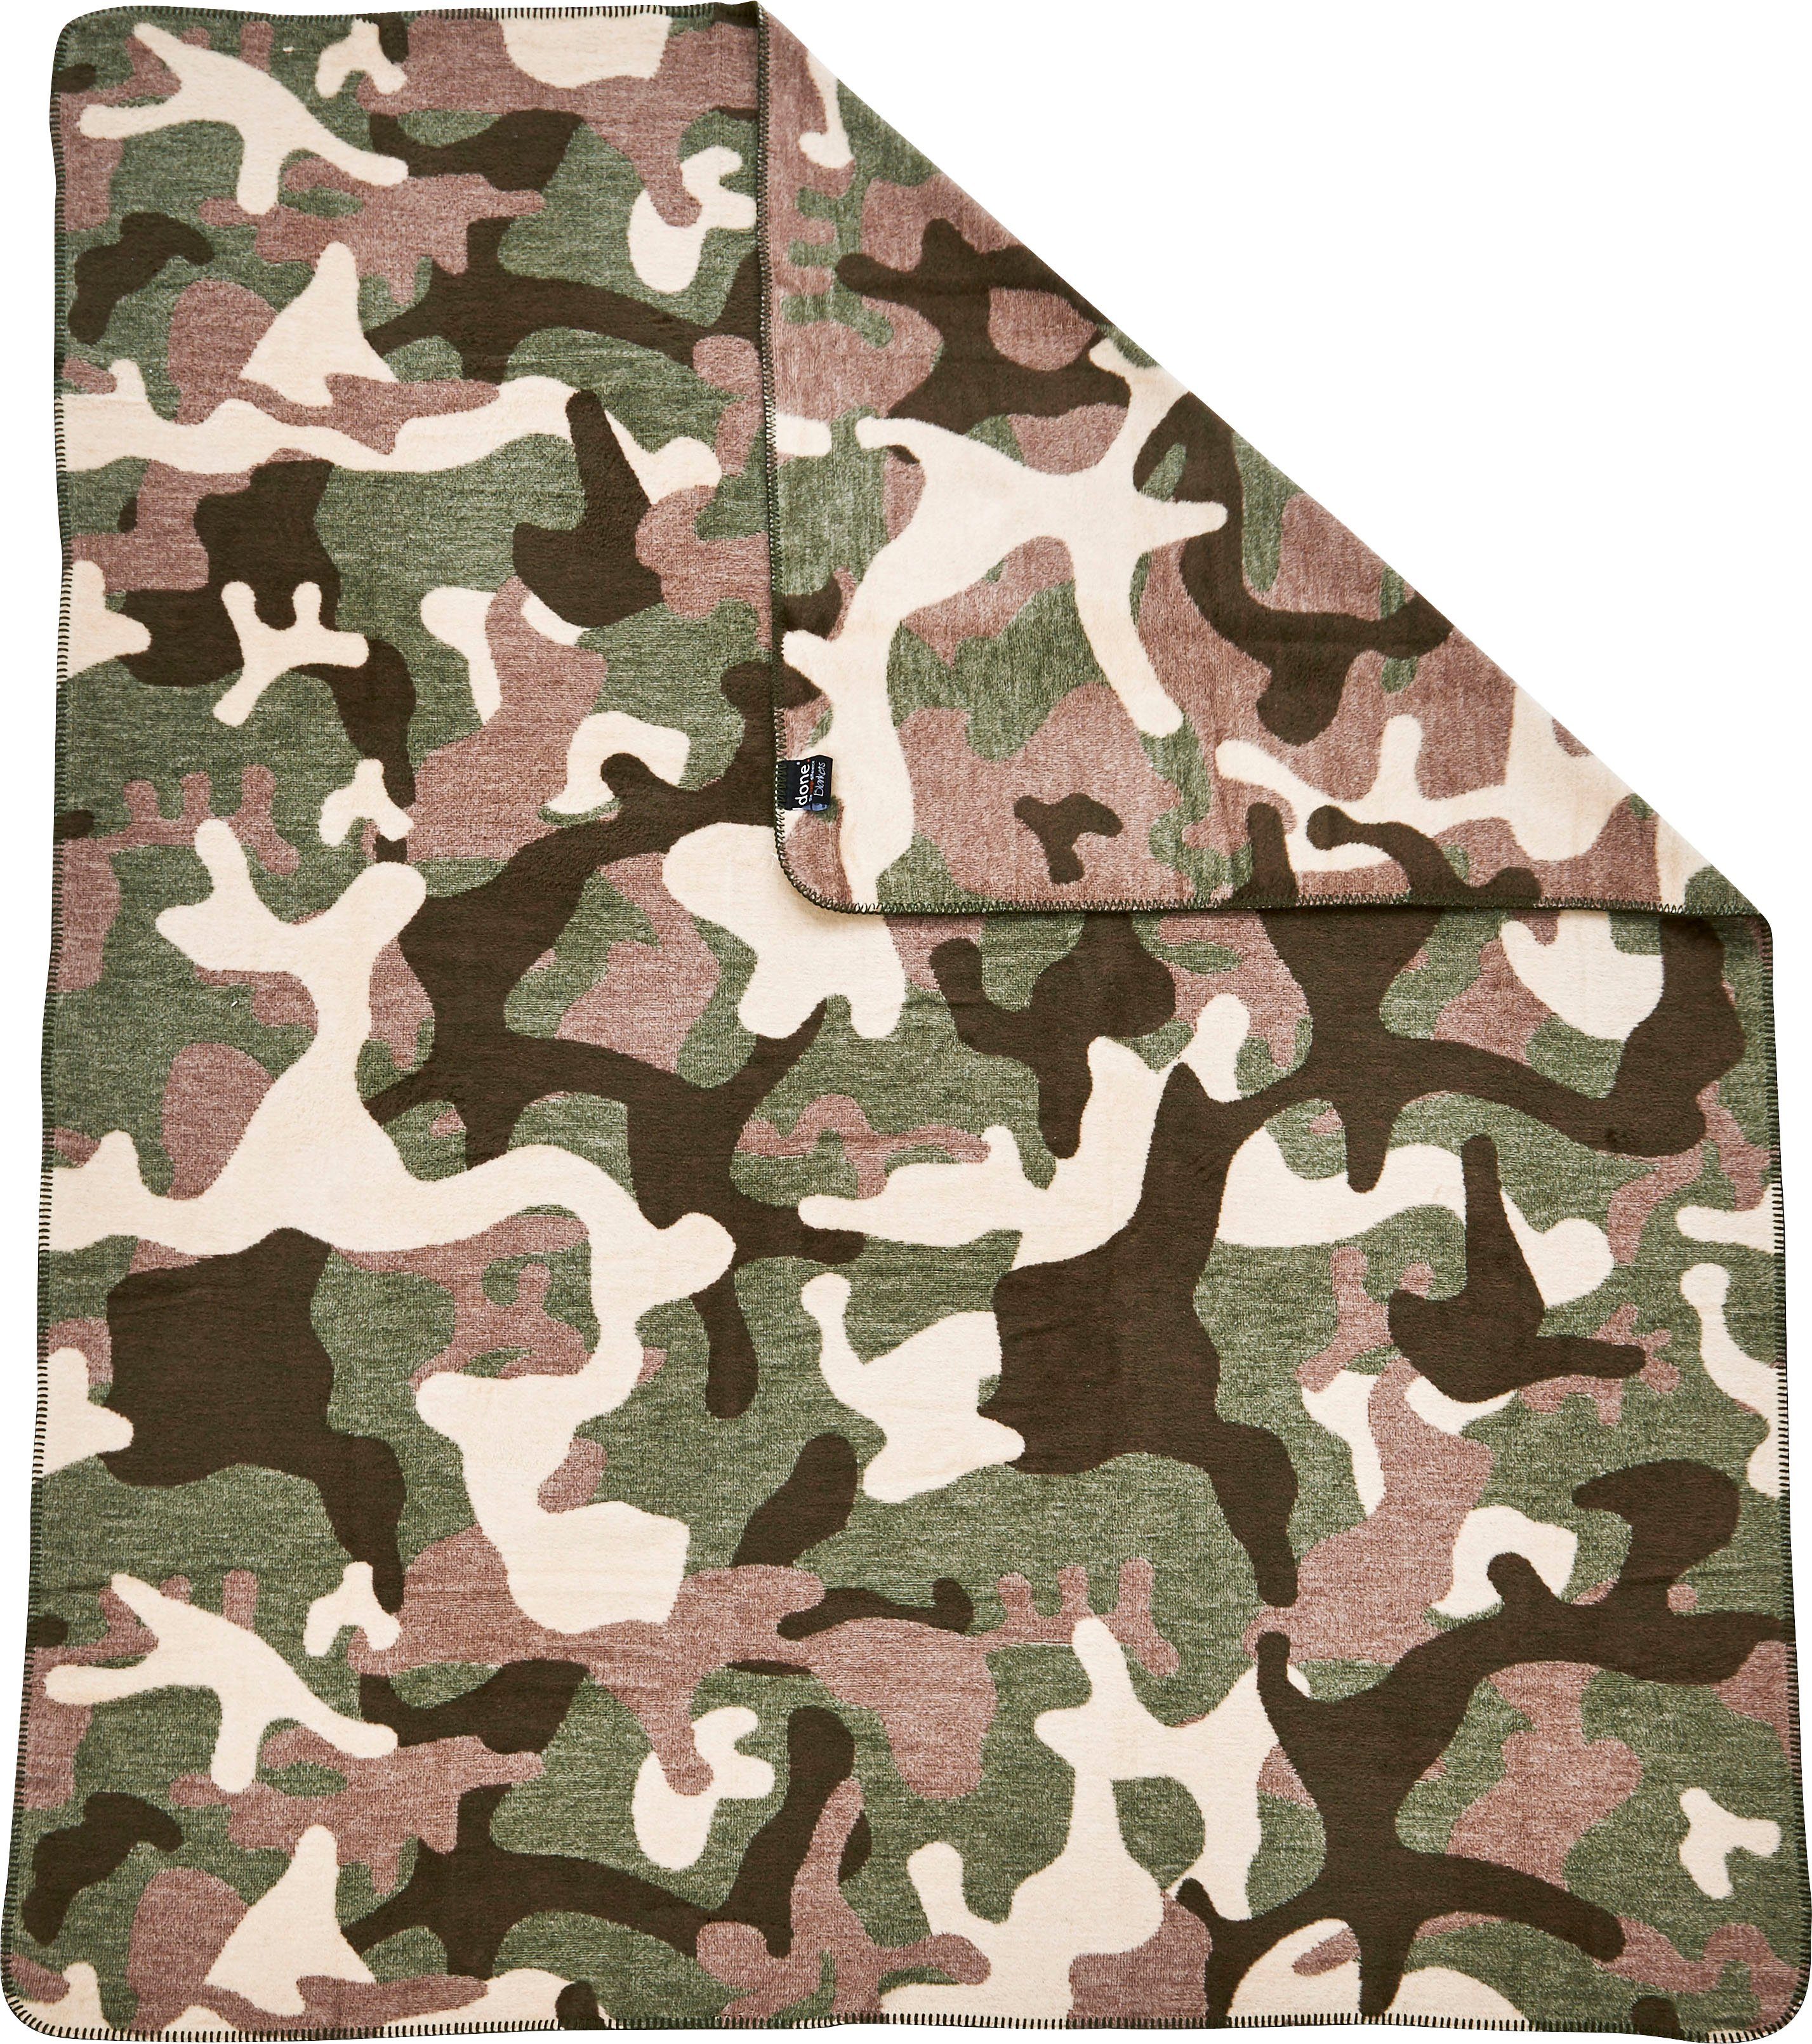 Wohndecke Camouflage, done.®, Wohndecke Kuscheldecke braun/grün/beige einfassender mit Ziernaht